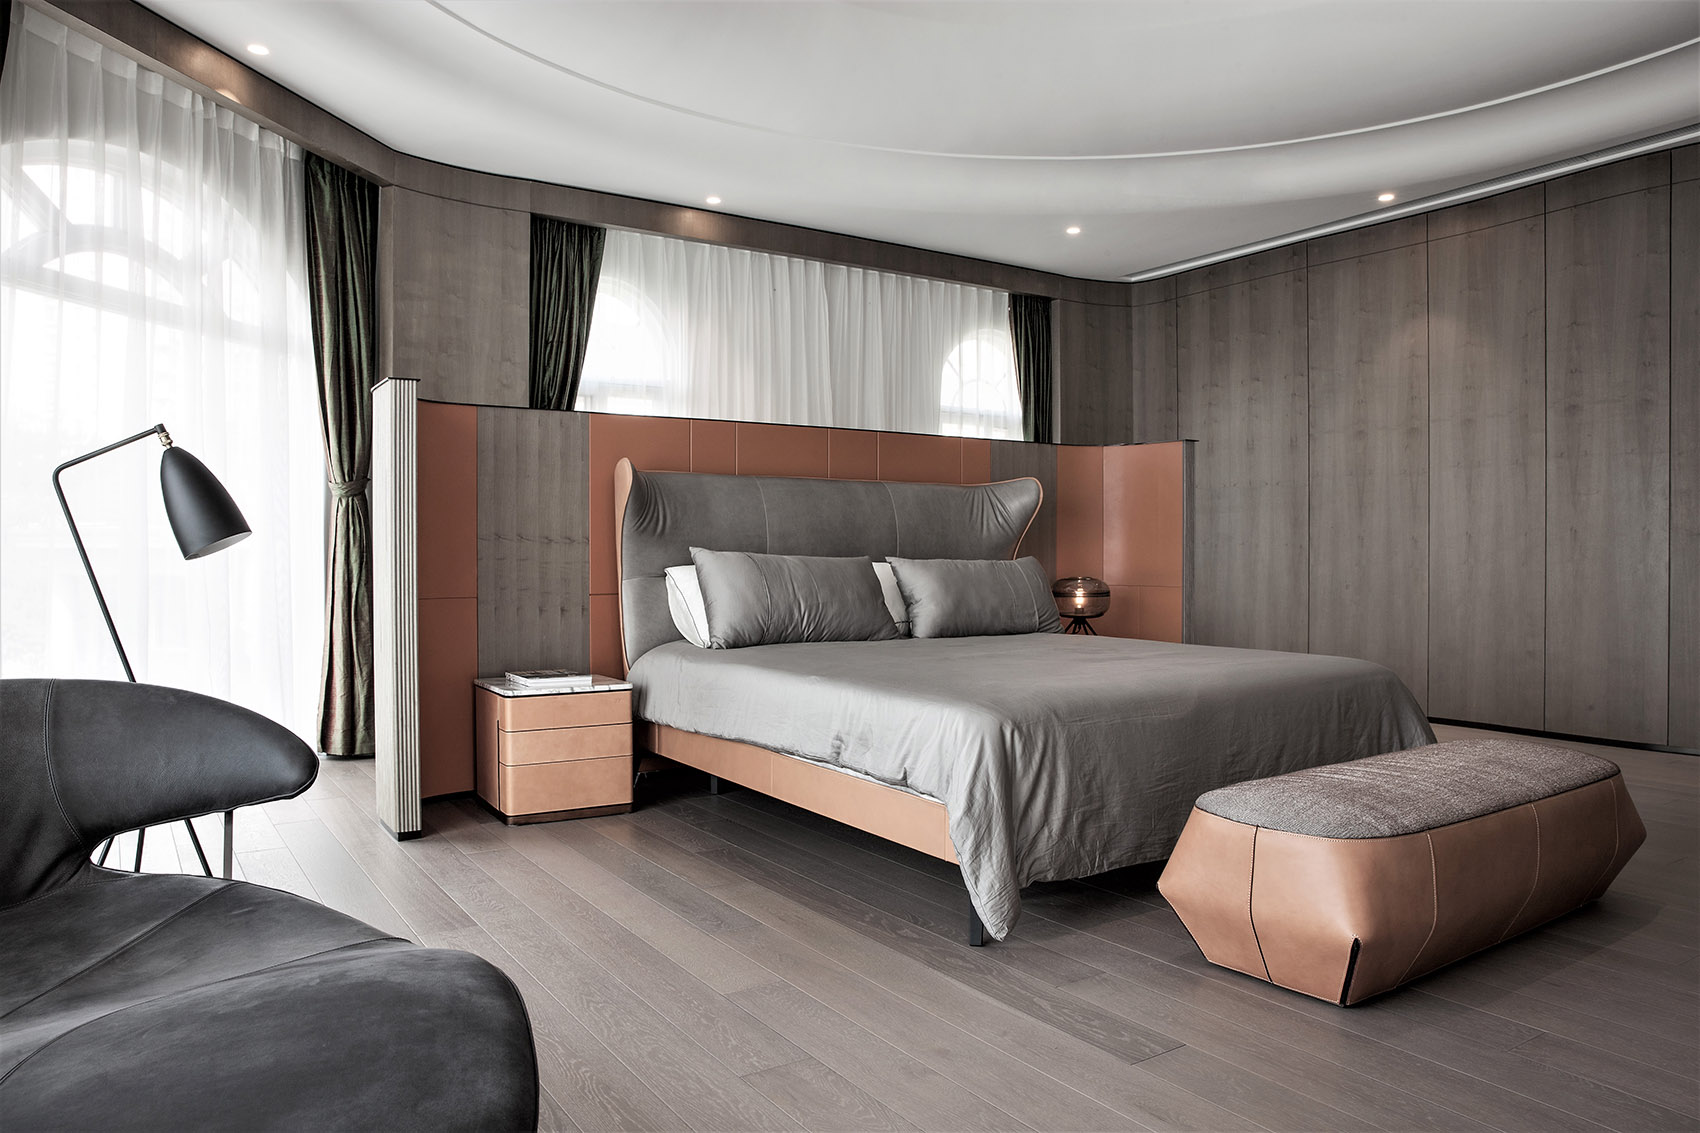 次卧以木色为背景，床头设计层次感强，提升了空间的活跃感与层次感。